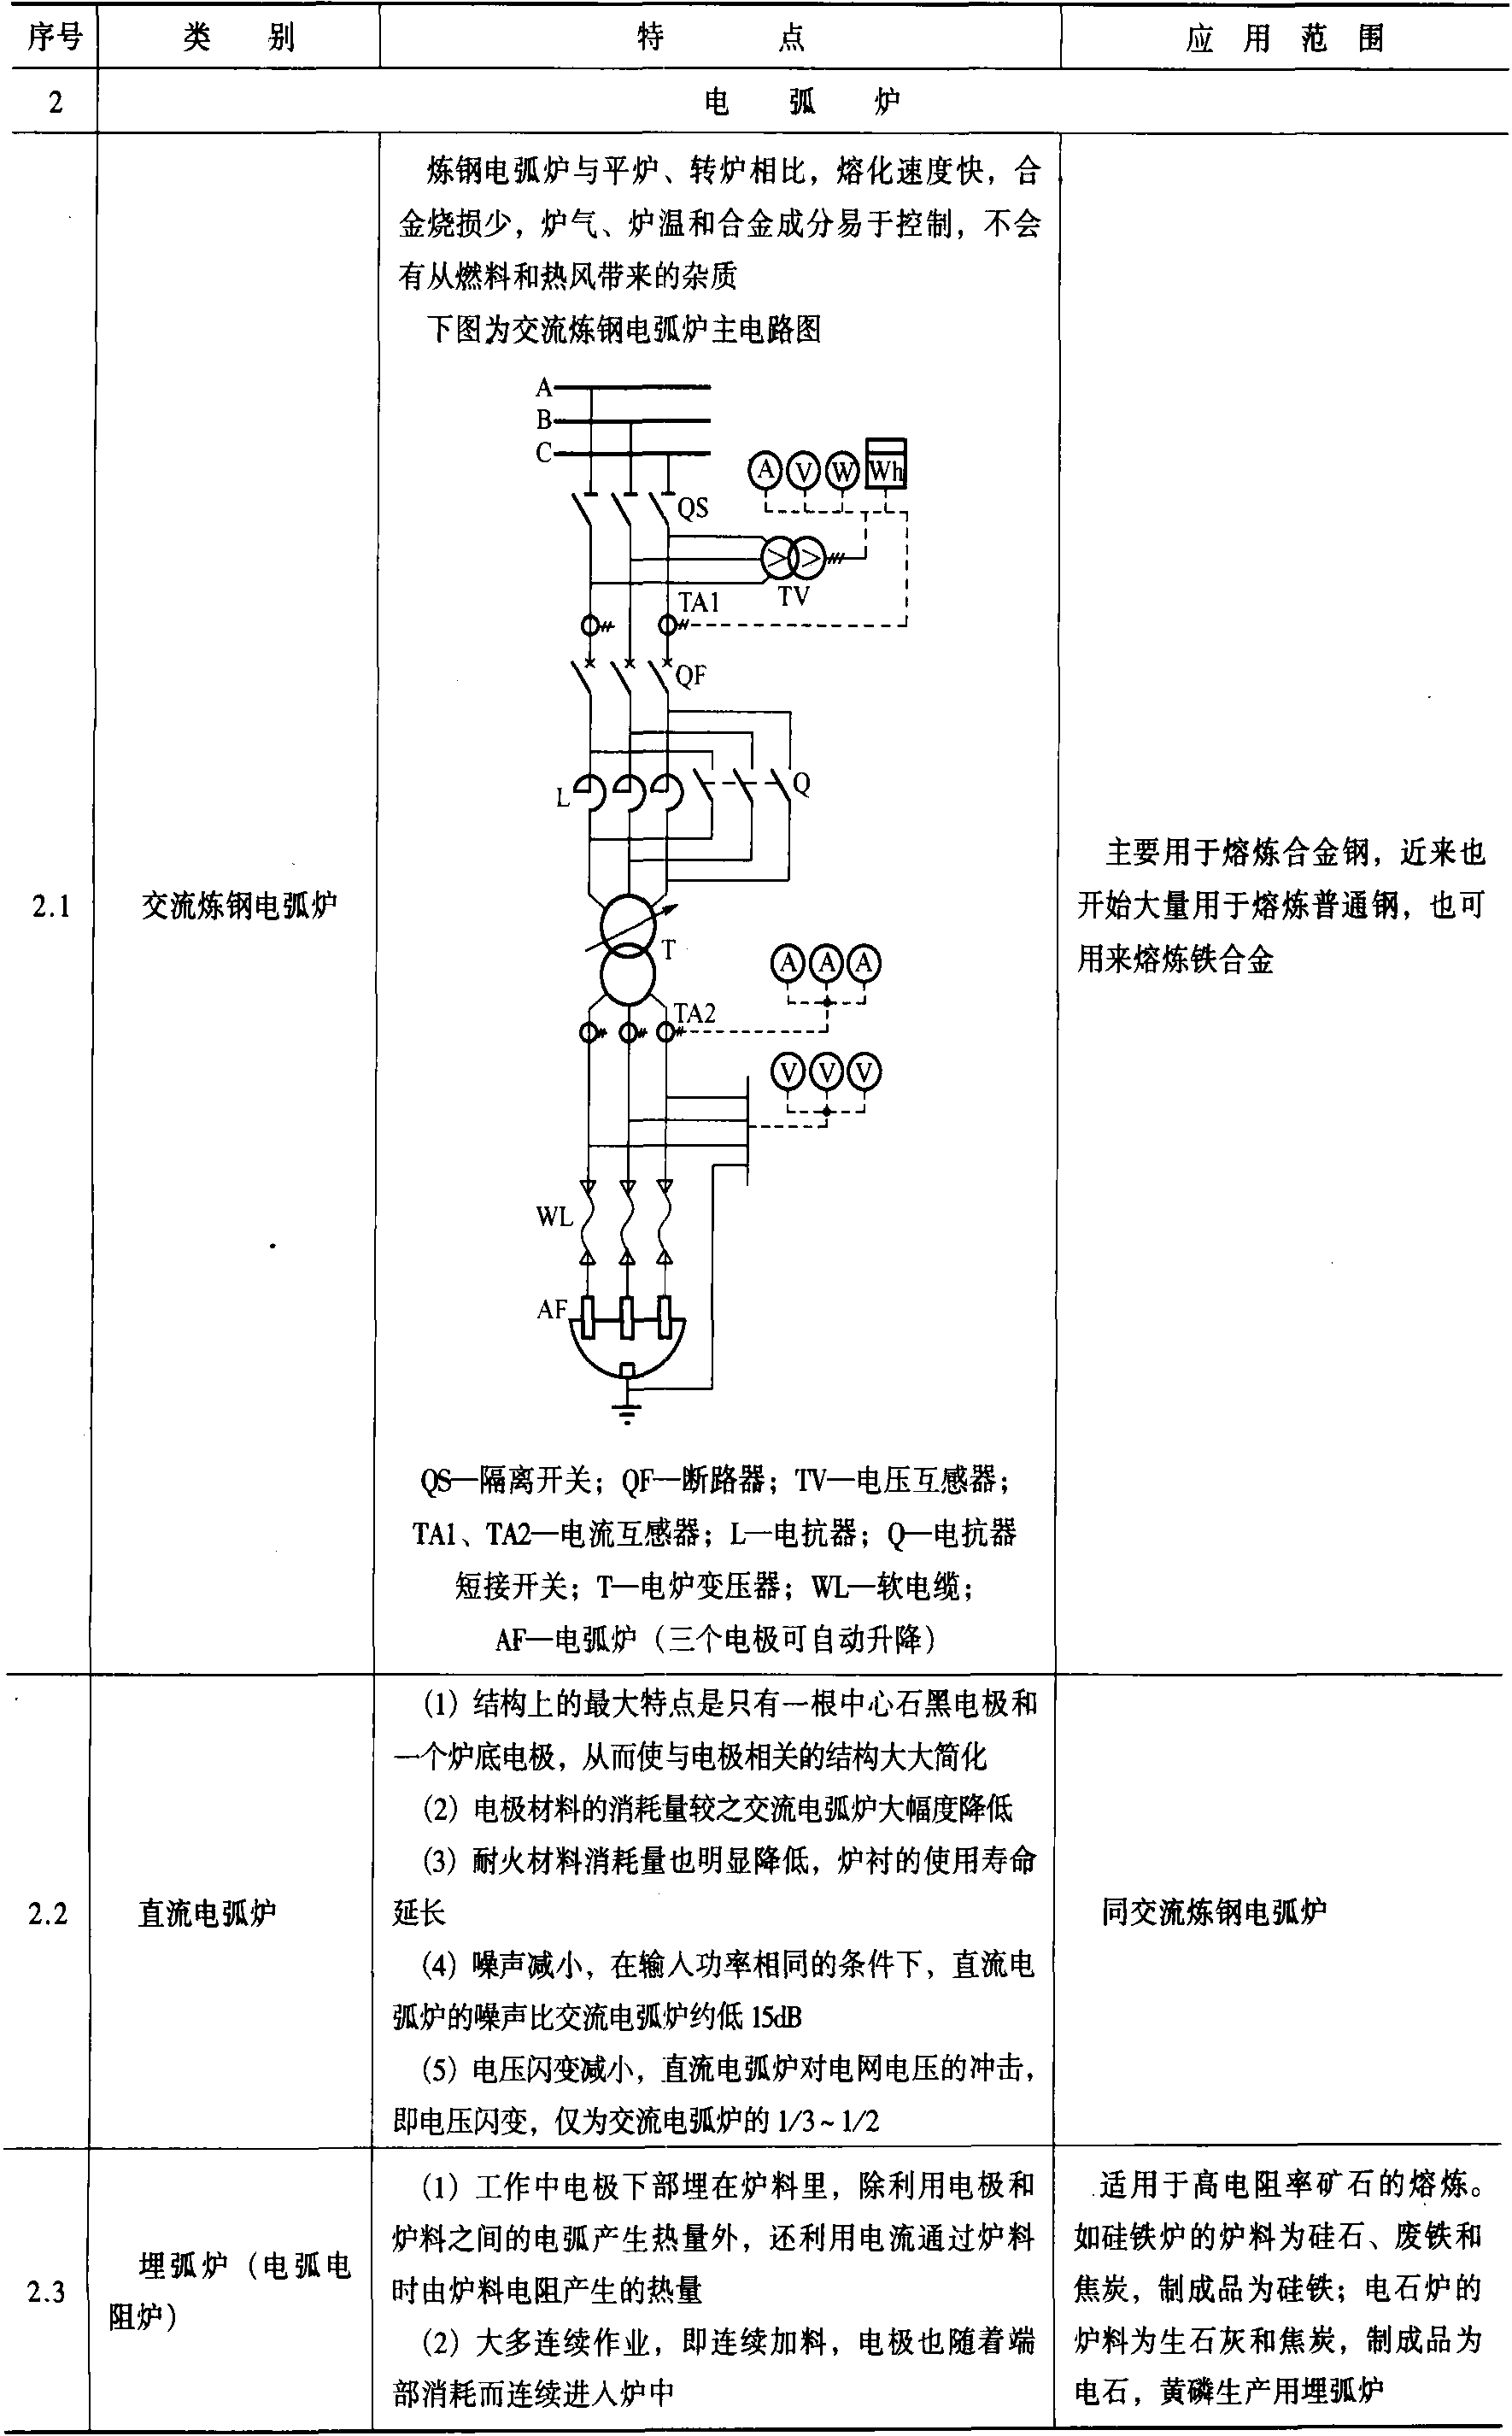 一、电加热设备的用电特点及应用范围 (见表15-1)